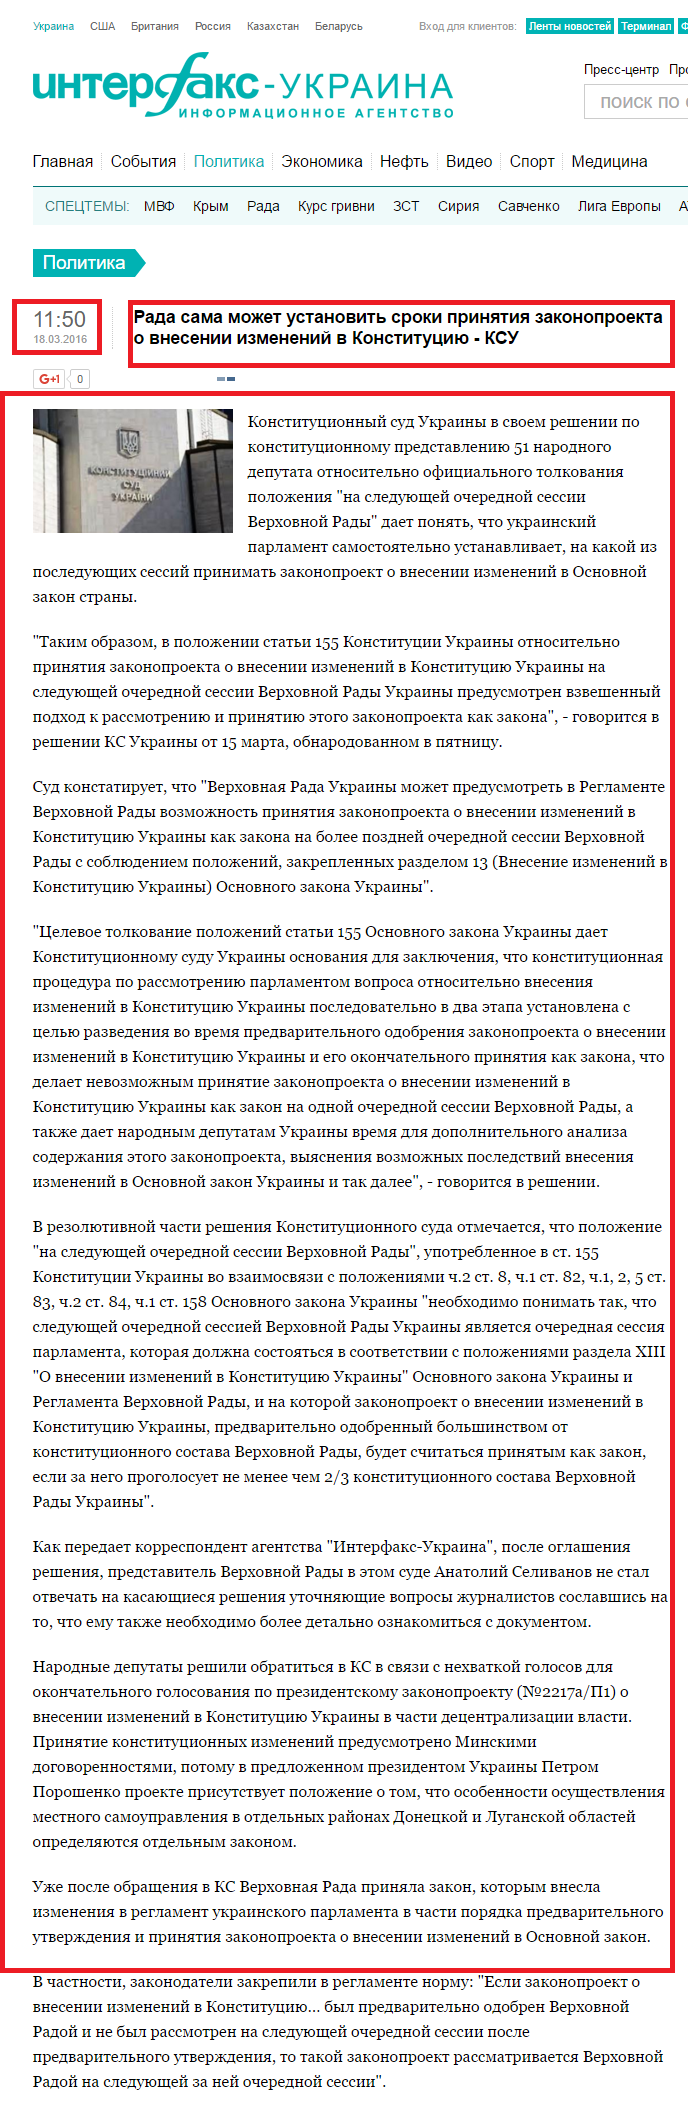 http://interfax.com.ua/news/political/331589.html